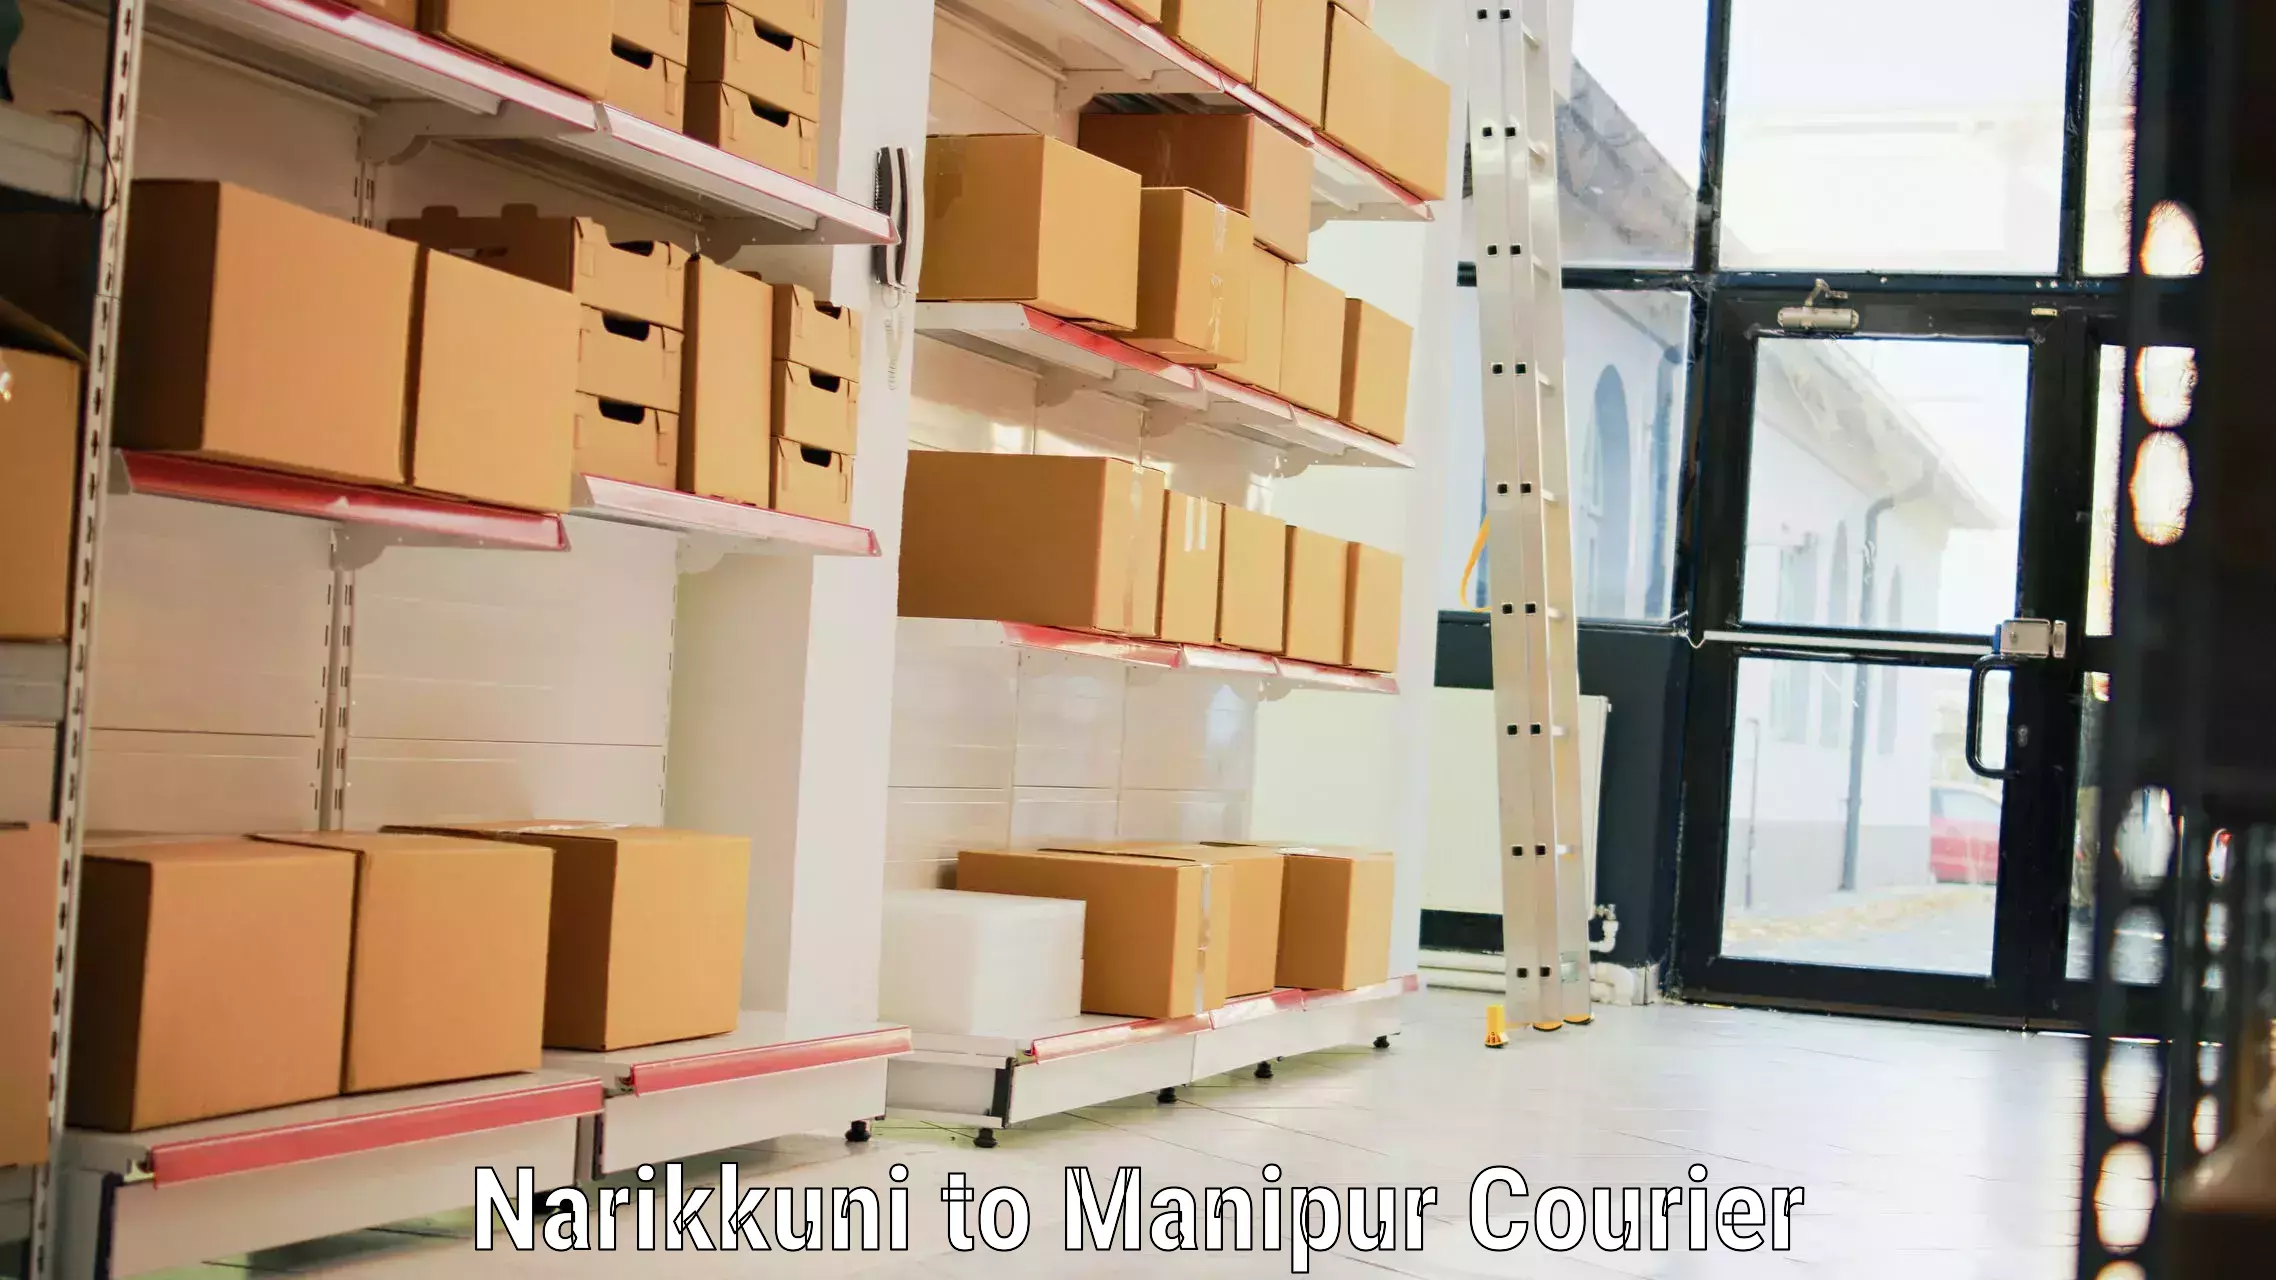 Luggage shipping estimate Narikkuni to Manipur